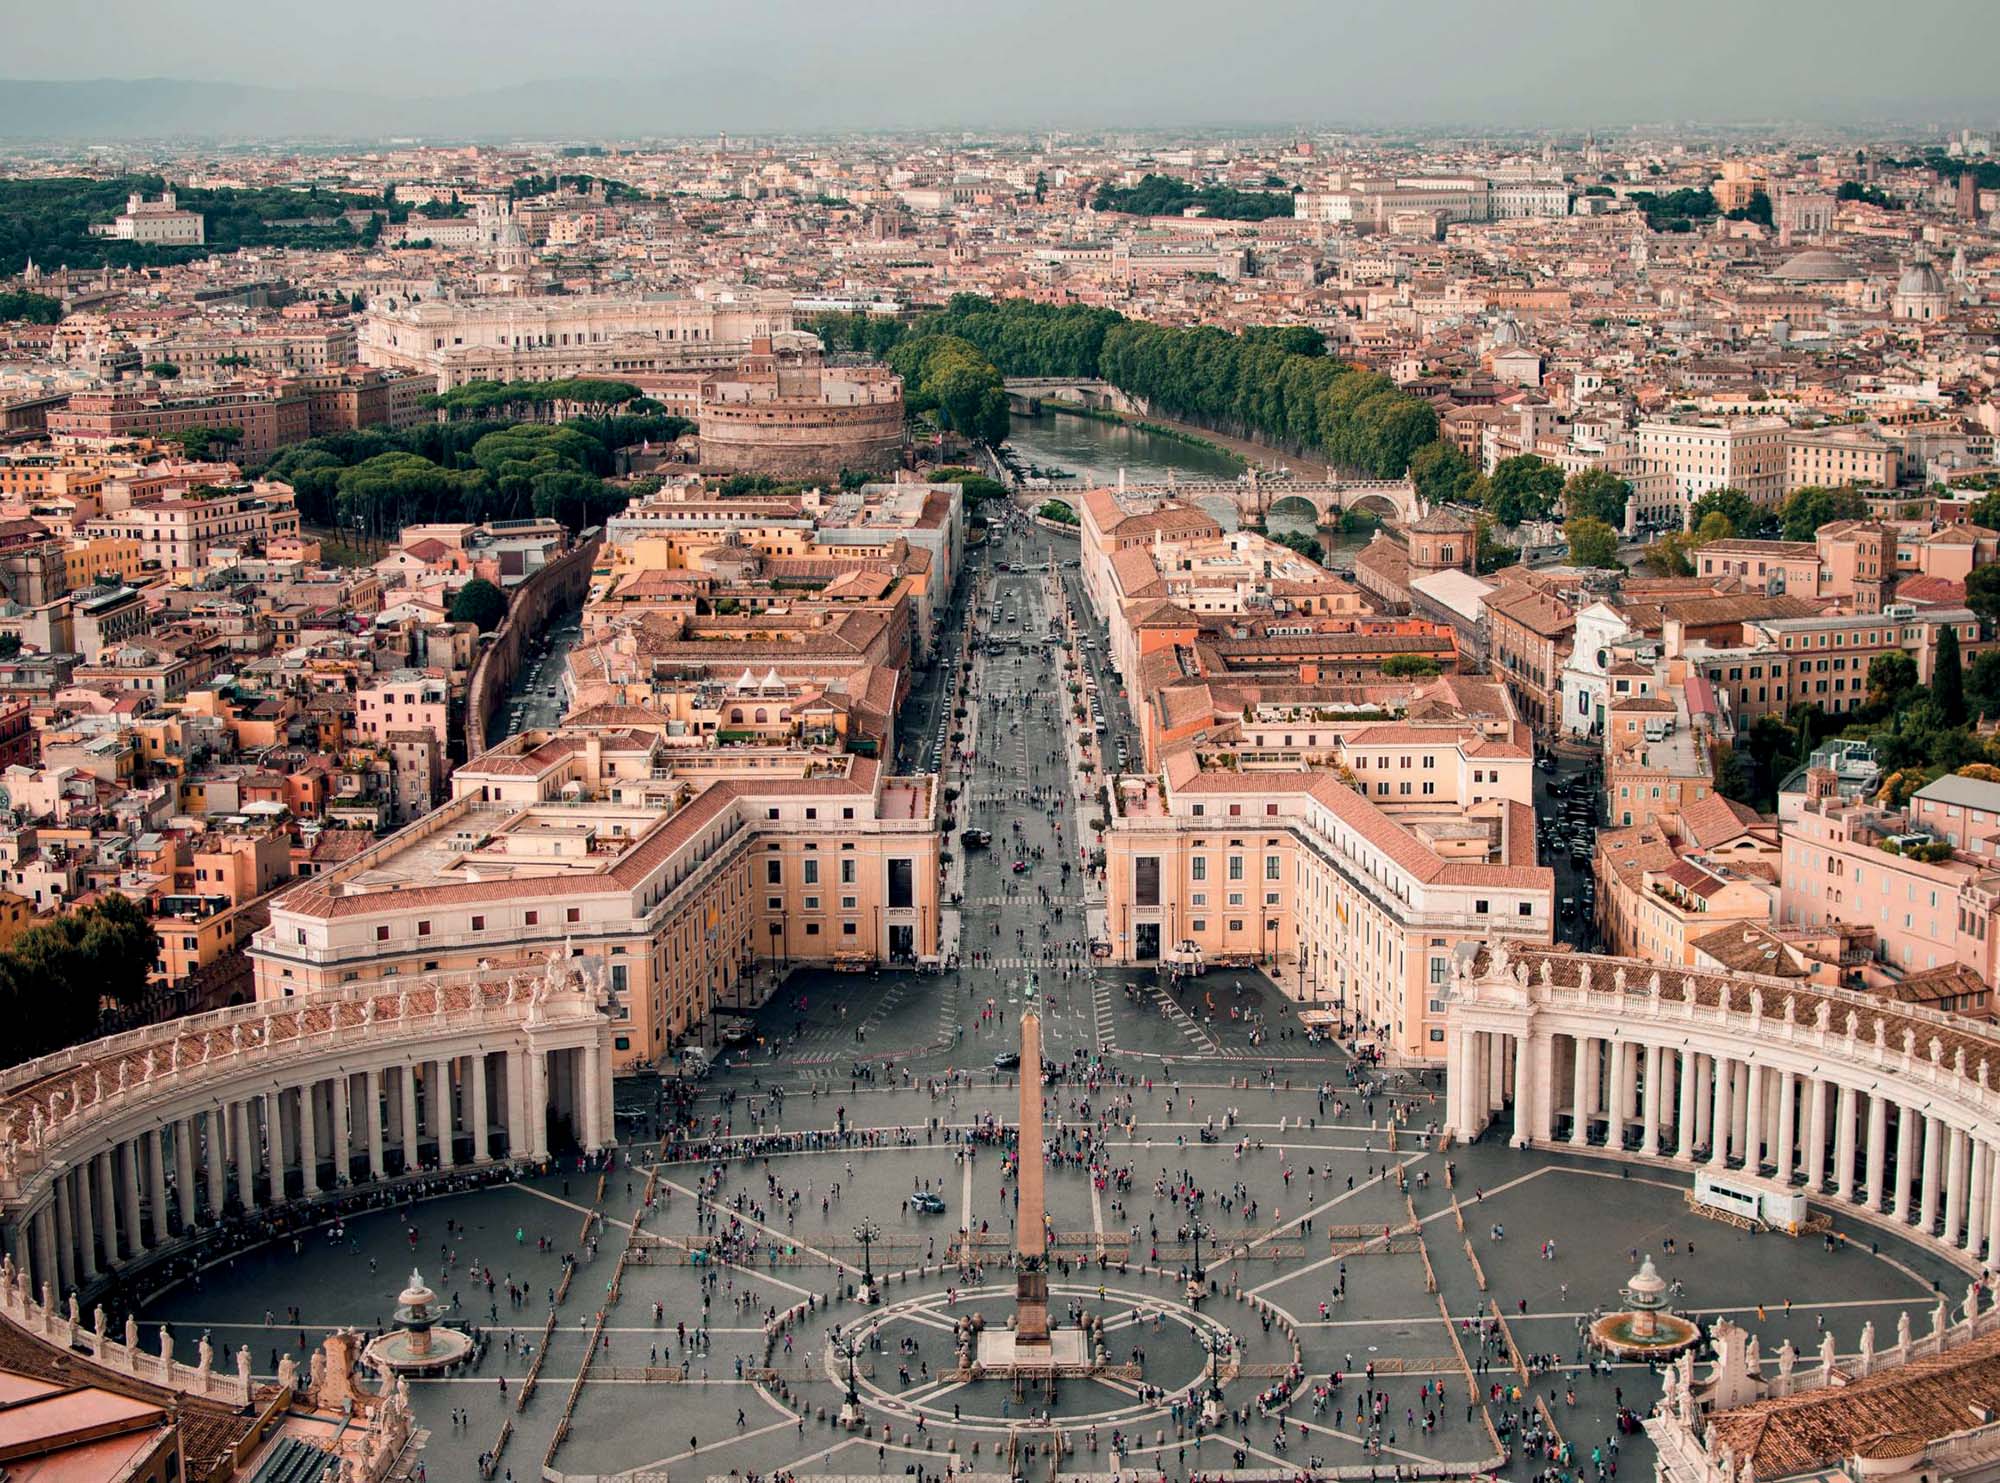 Cùng nhau thực hiện 38.000 bước ở Rome | ELLE